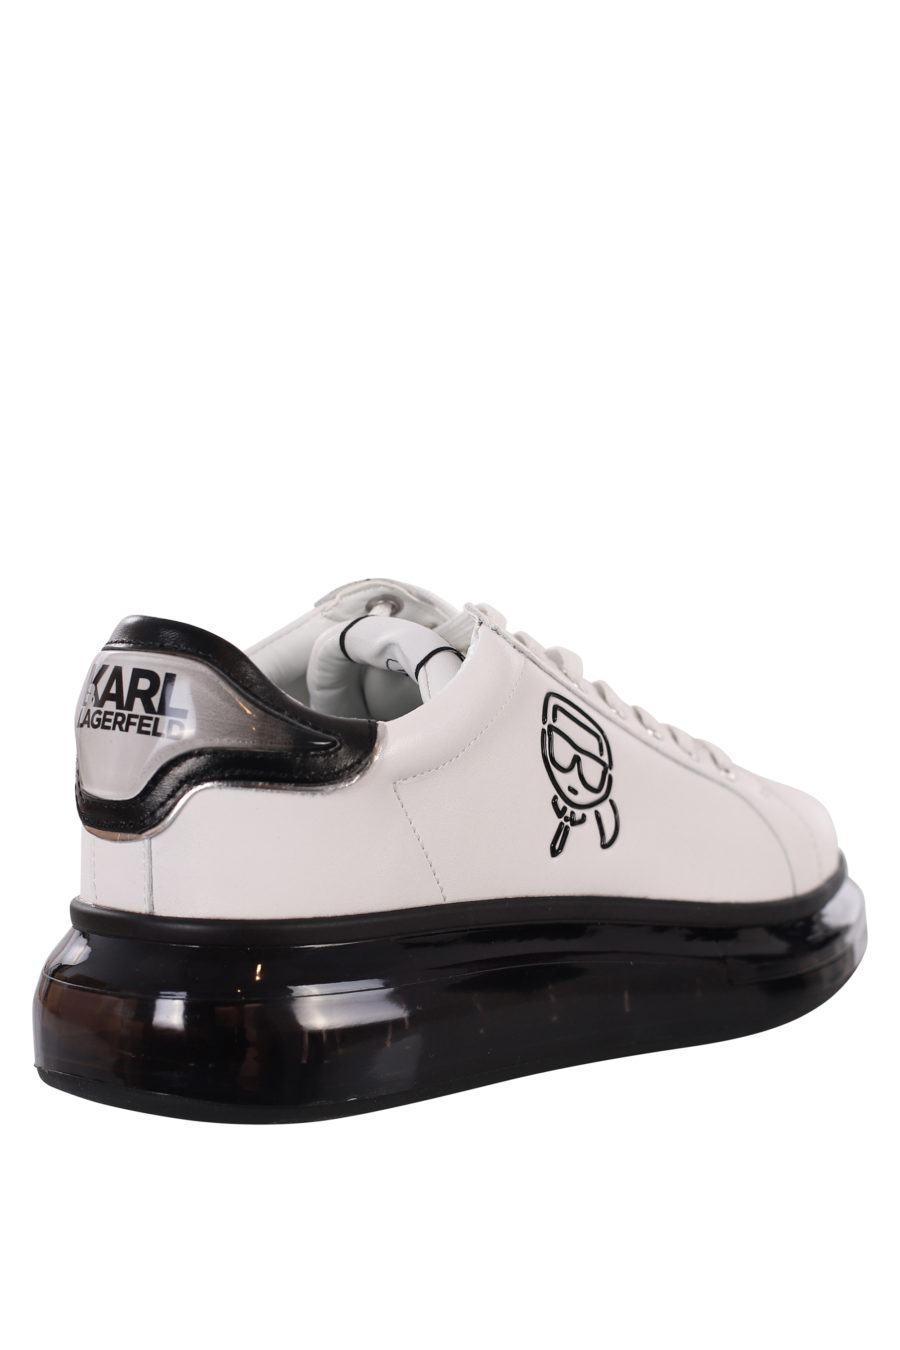 Zapatillas blancas con logo silueta negro y suela negra - IMG 0420